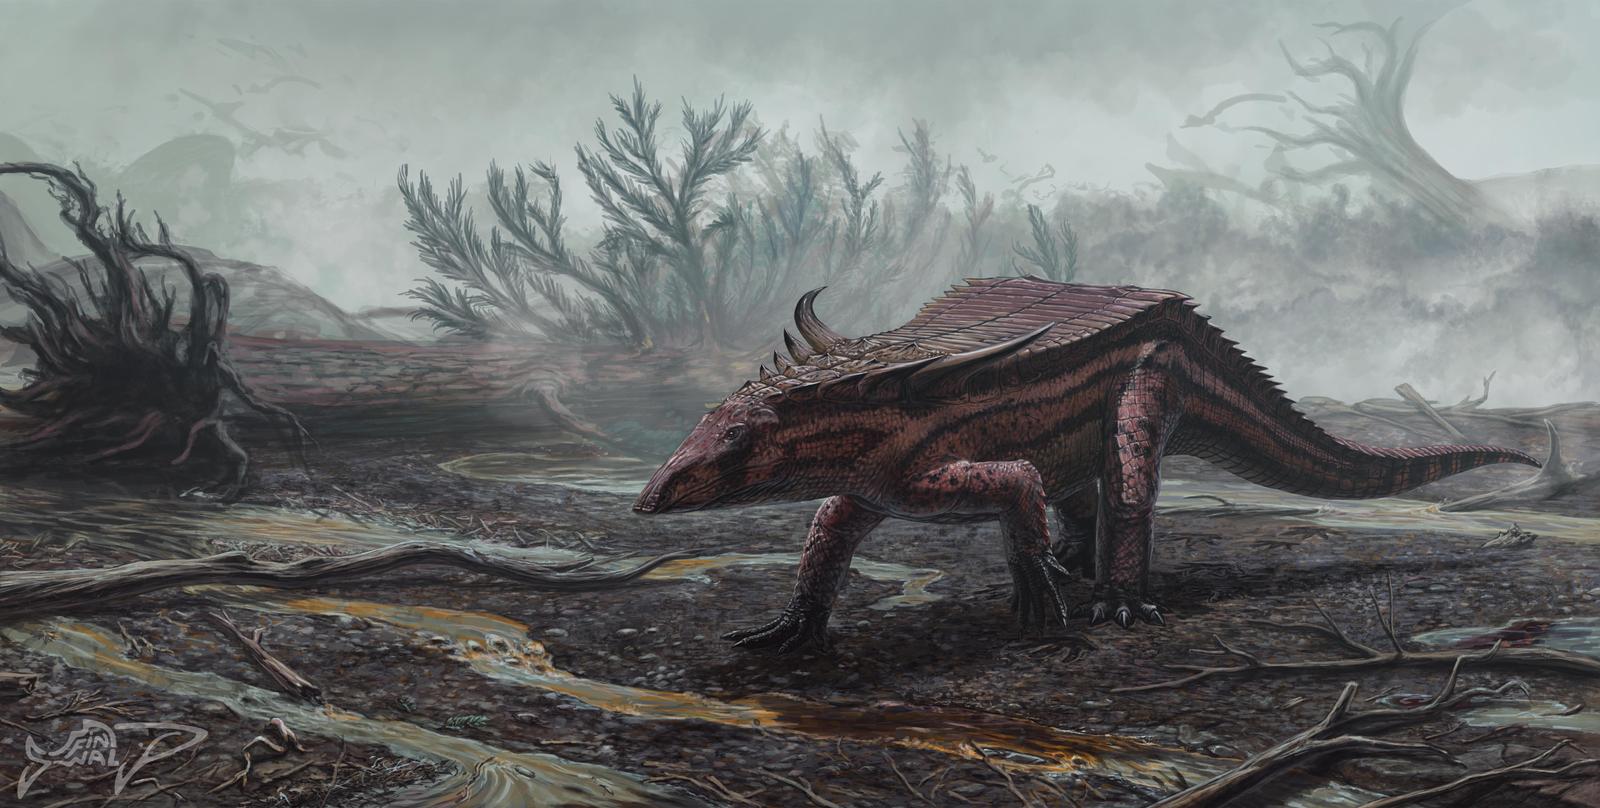 desmatosuchus